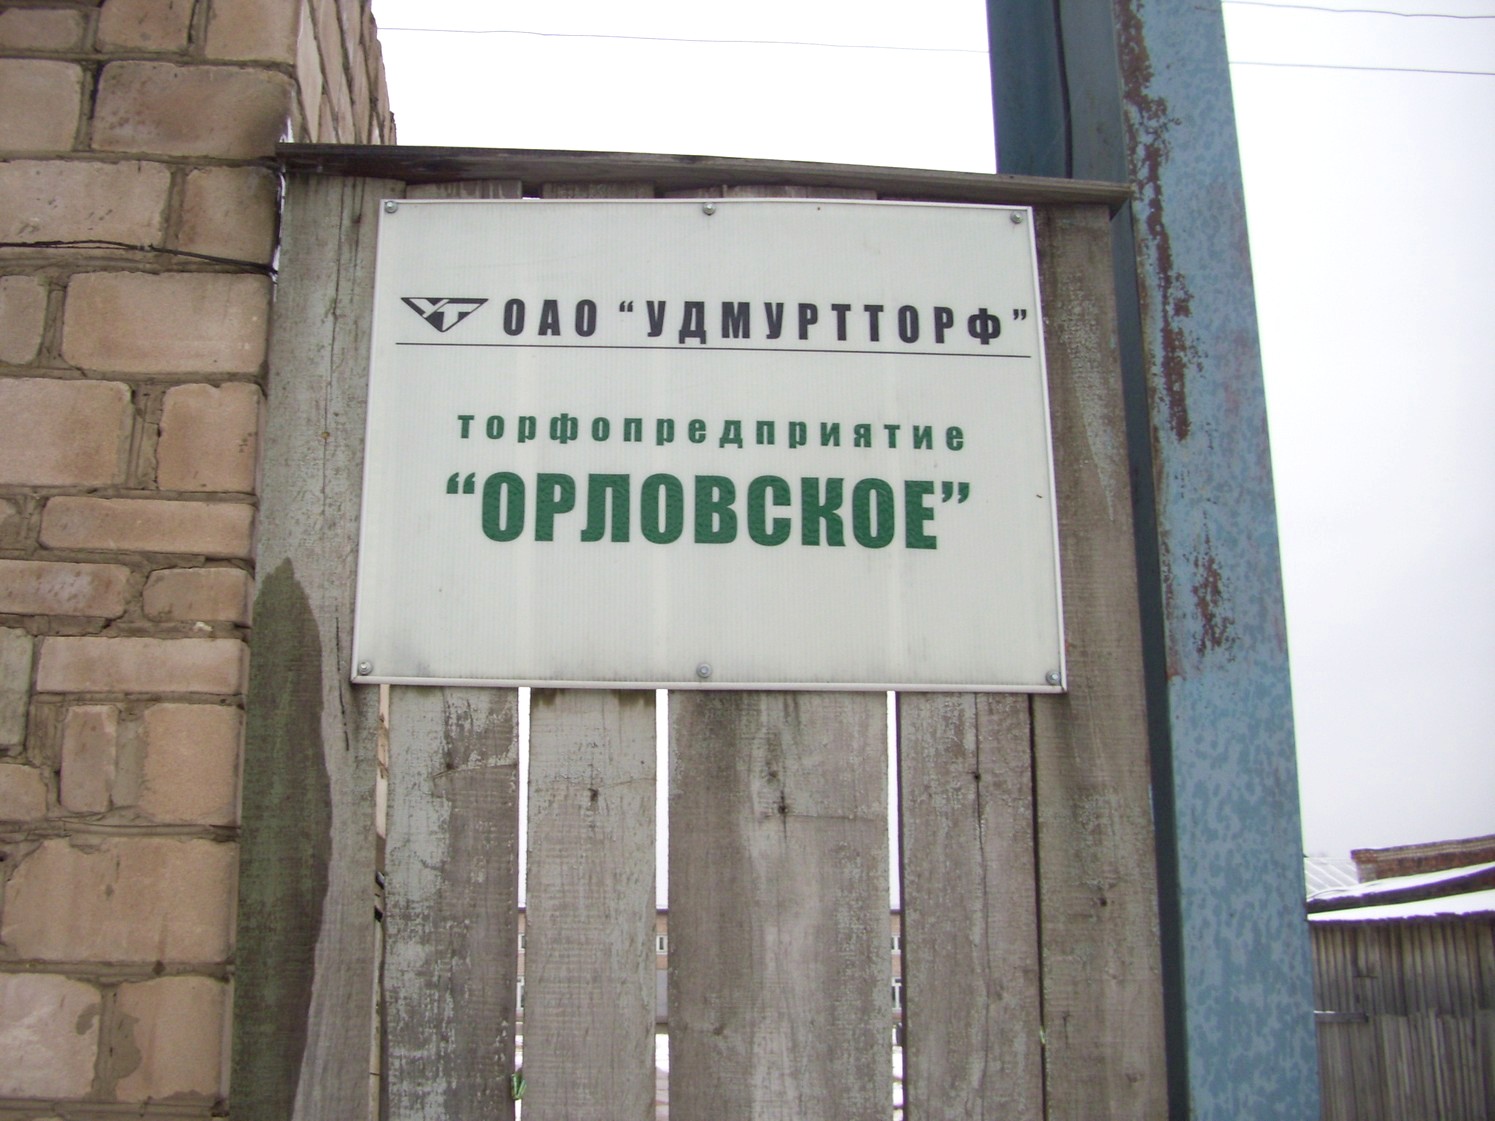 Узкоколейная железная дорога Орловского торфопредприятия   —  фотографии, сделанные в 2009 году (часть 4)